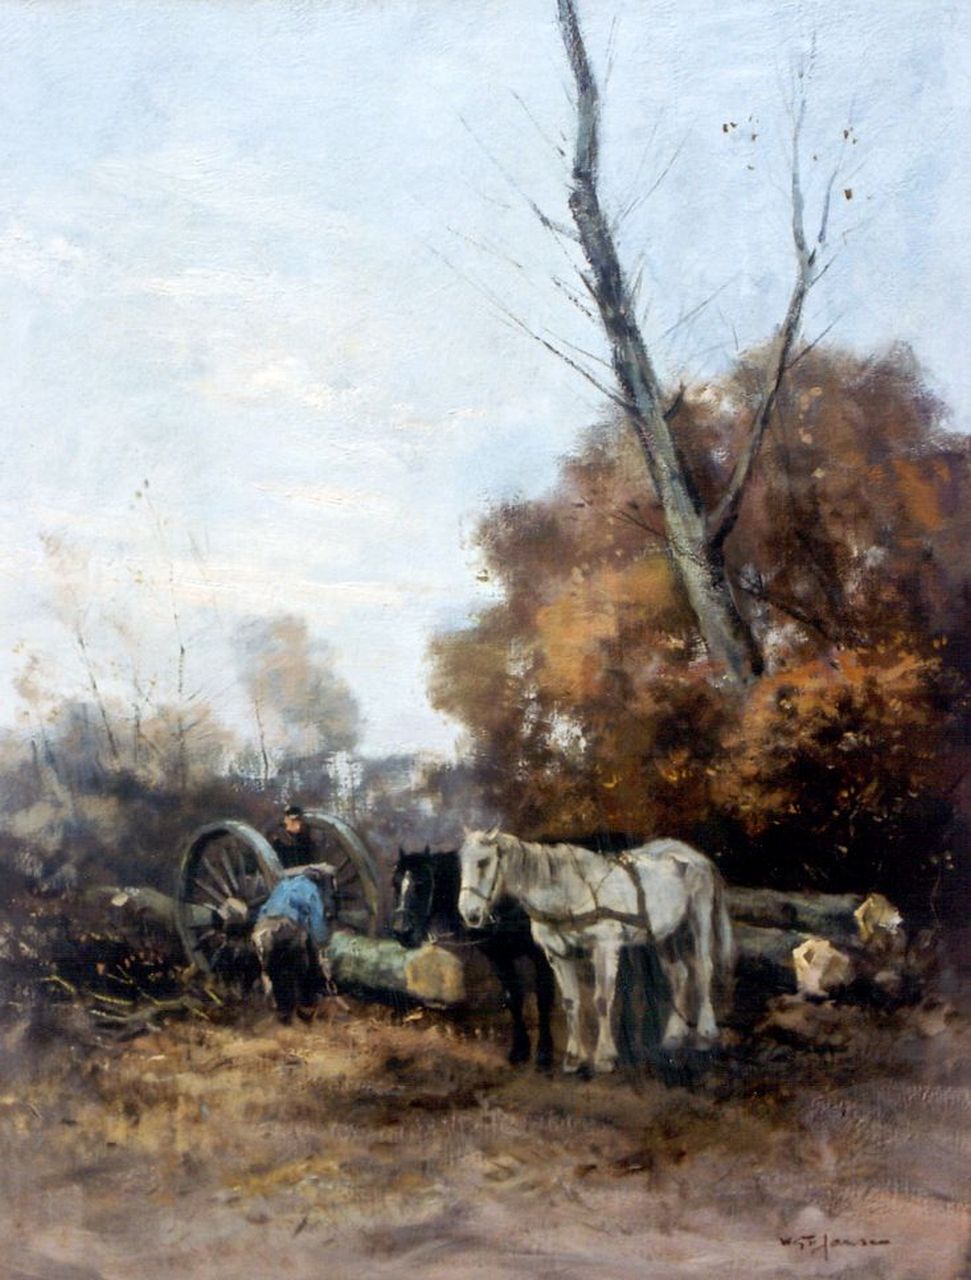 Jansen W.G.F.  | 'Willem' George Frederik Jansen, Mallejan, olieverf op doek 64,5 x 50,0 cm, gesigneerd rechtsonder